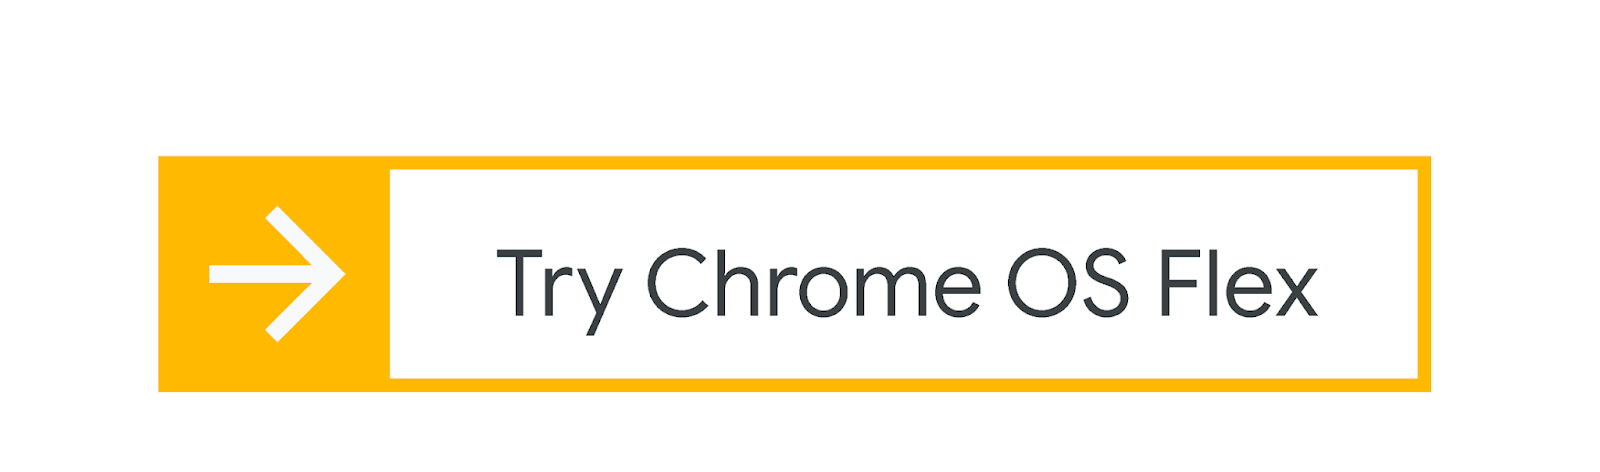 Cloudready devient Chrome OS Flex pour transformer PC et MAC en Chromebook